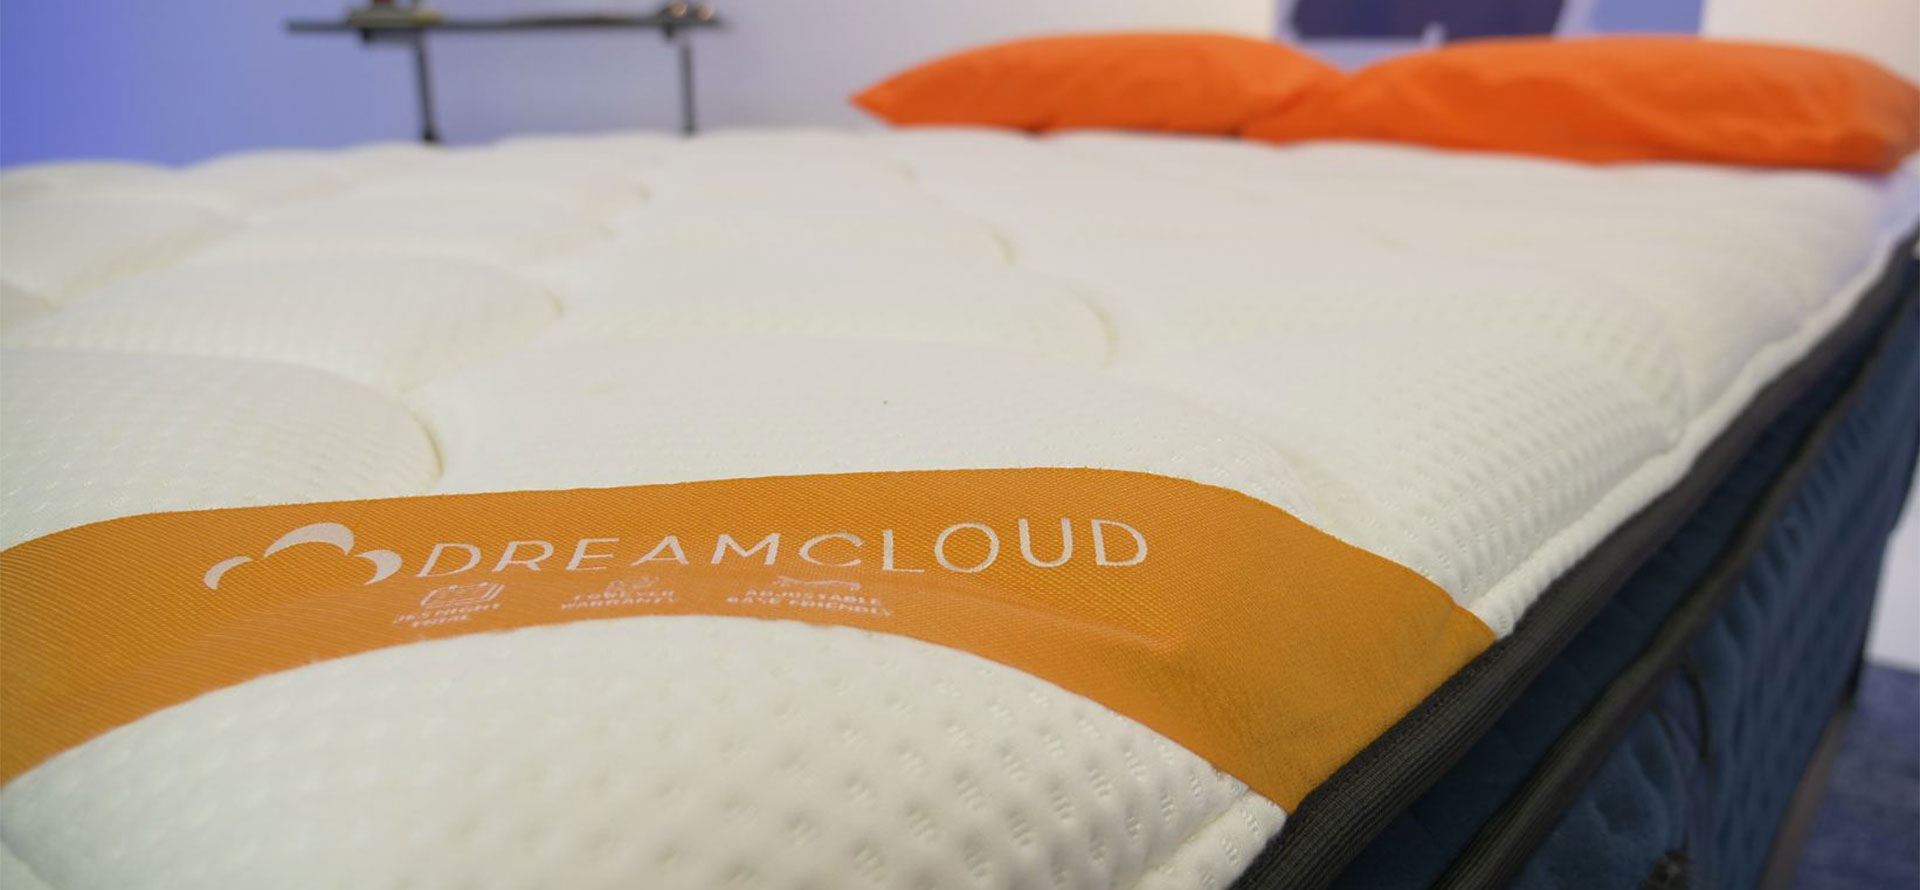 DreamCloud mattress on bed.